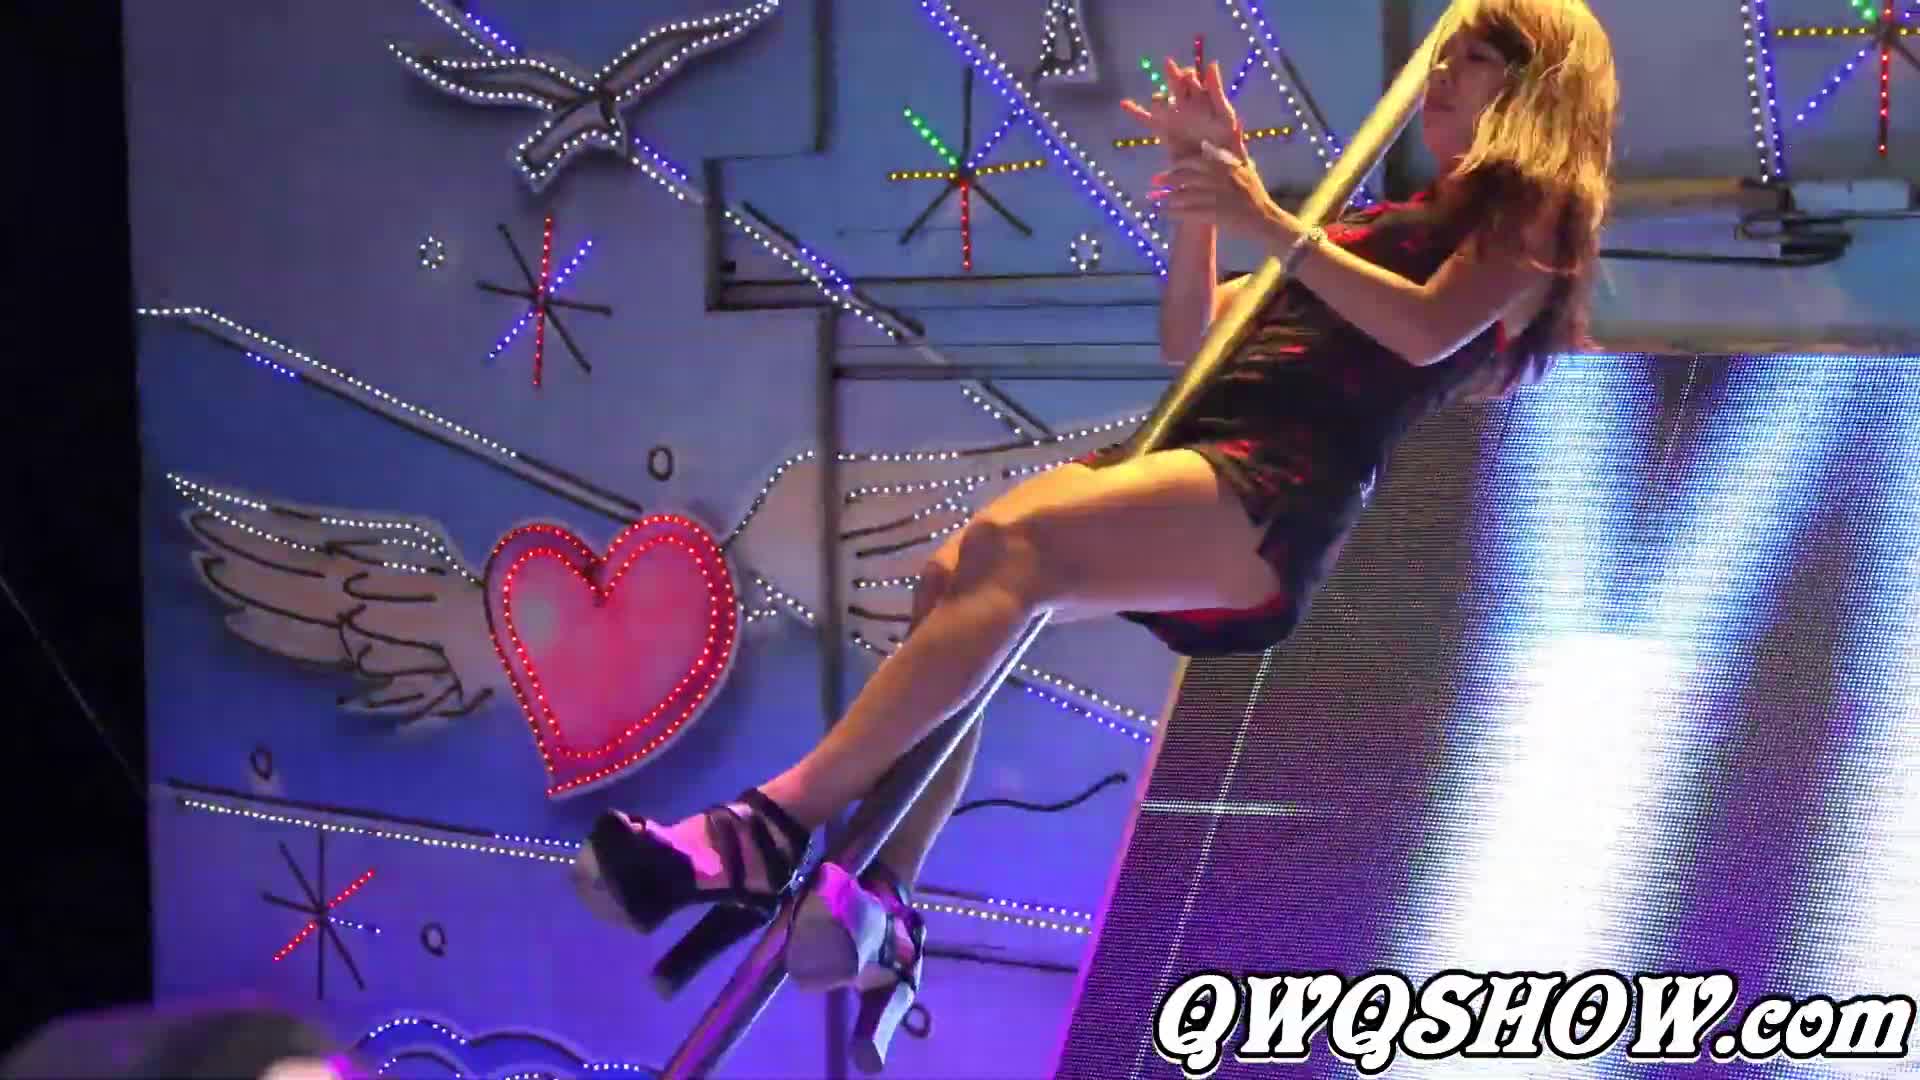 中元普渡辣妹鋼管秀(433) & Pole dance show & セクシーダンス & เต้นเซ็กซี่ & 섹시댄